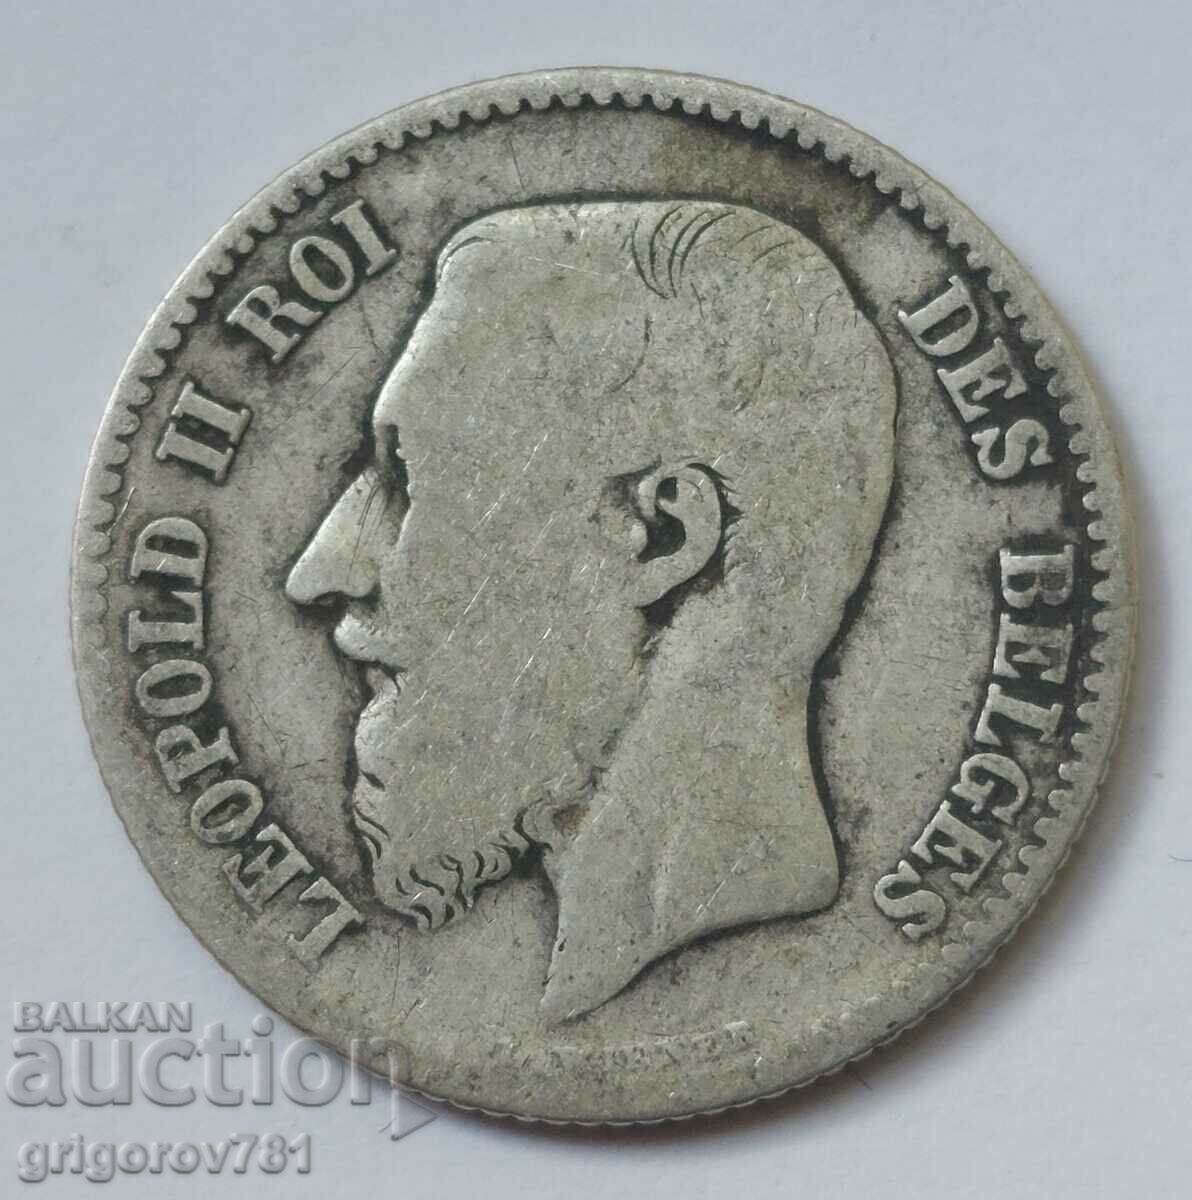 Ασημένιο 1 φράγκου Βέλγιο 1867 - ασημένιο νόμισμα #60